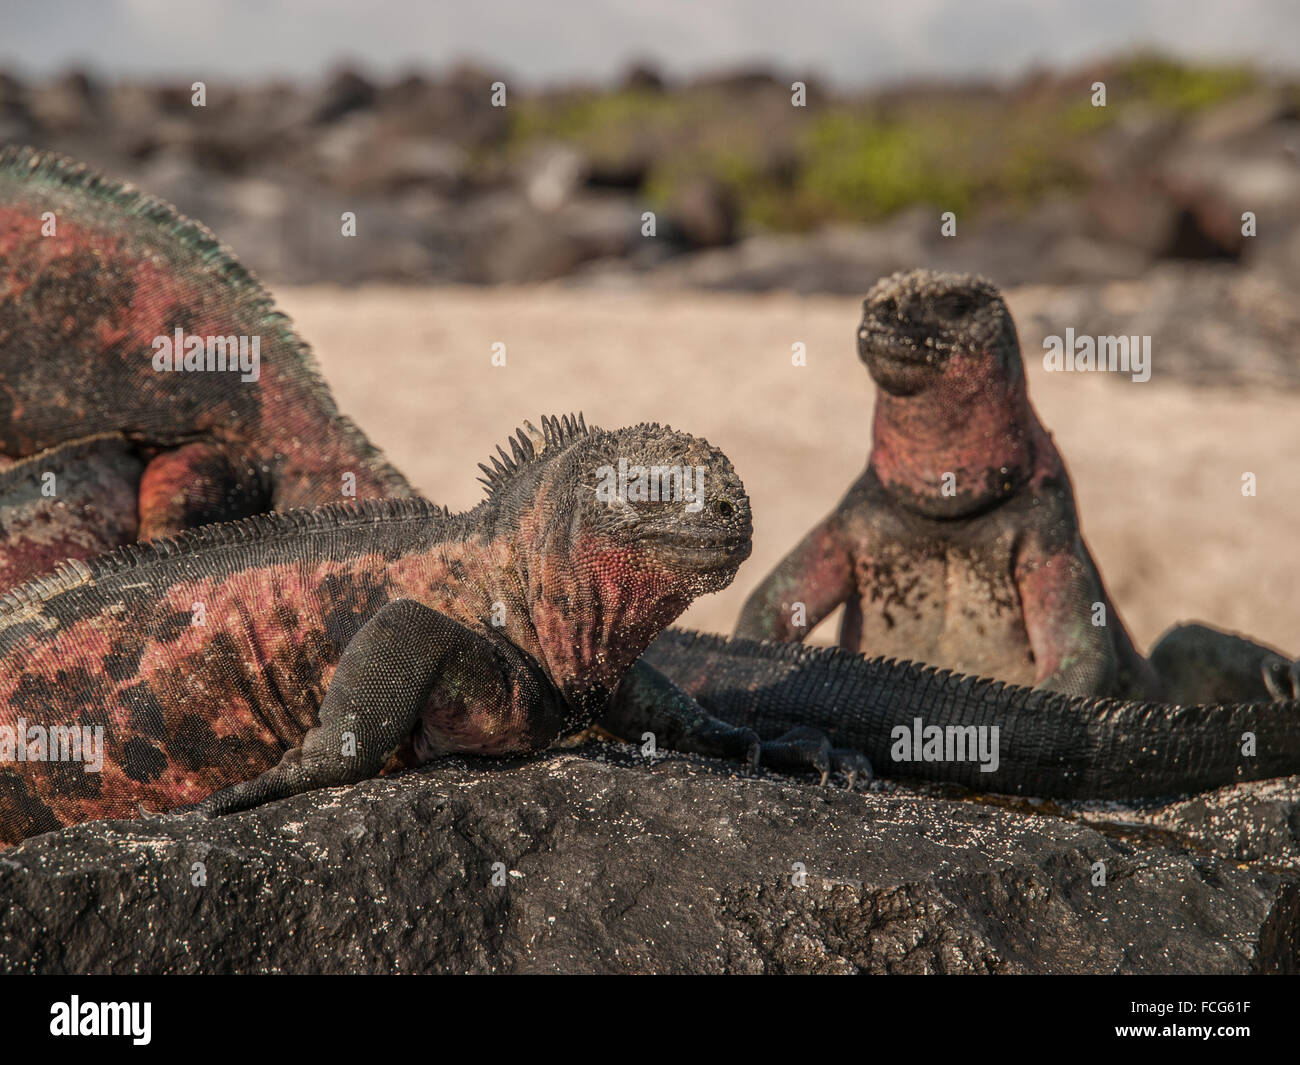 Groupe de quatre iguanes verts et rouges au sommet de roche de lave noire dans des îles Galapagos, en Équateur. Banque D'Images